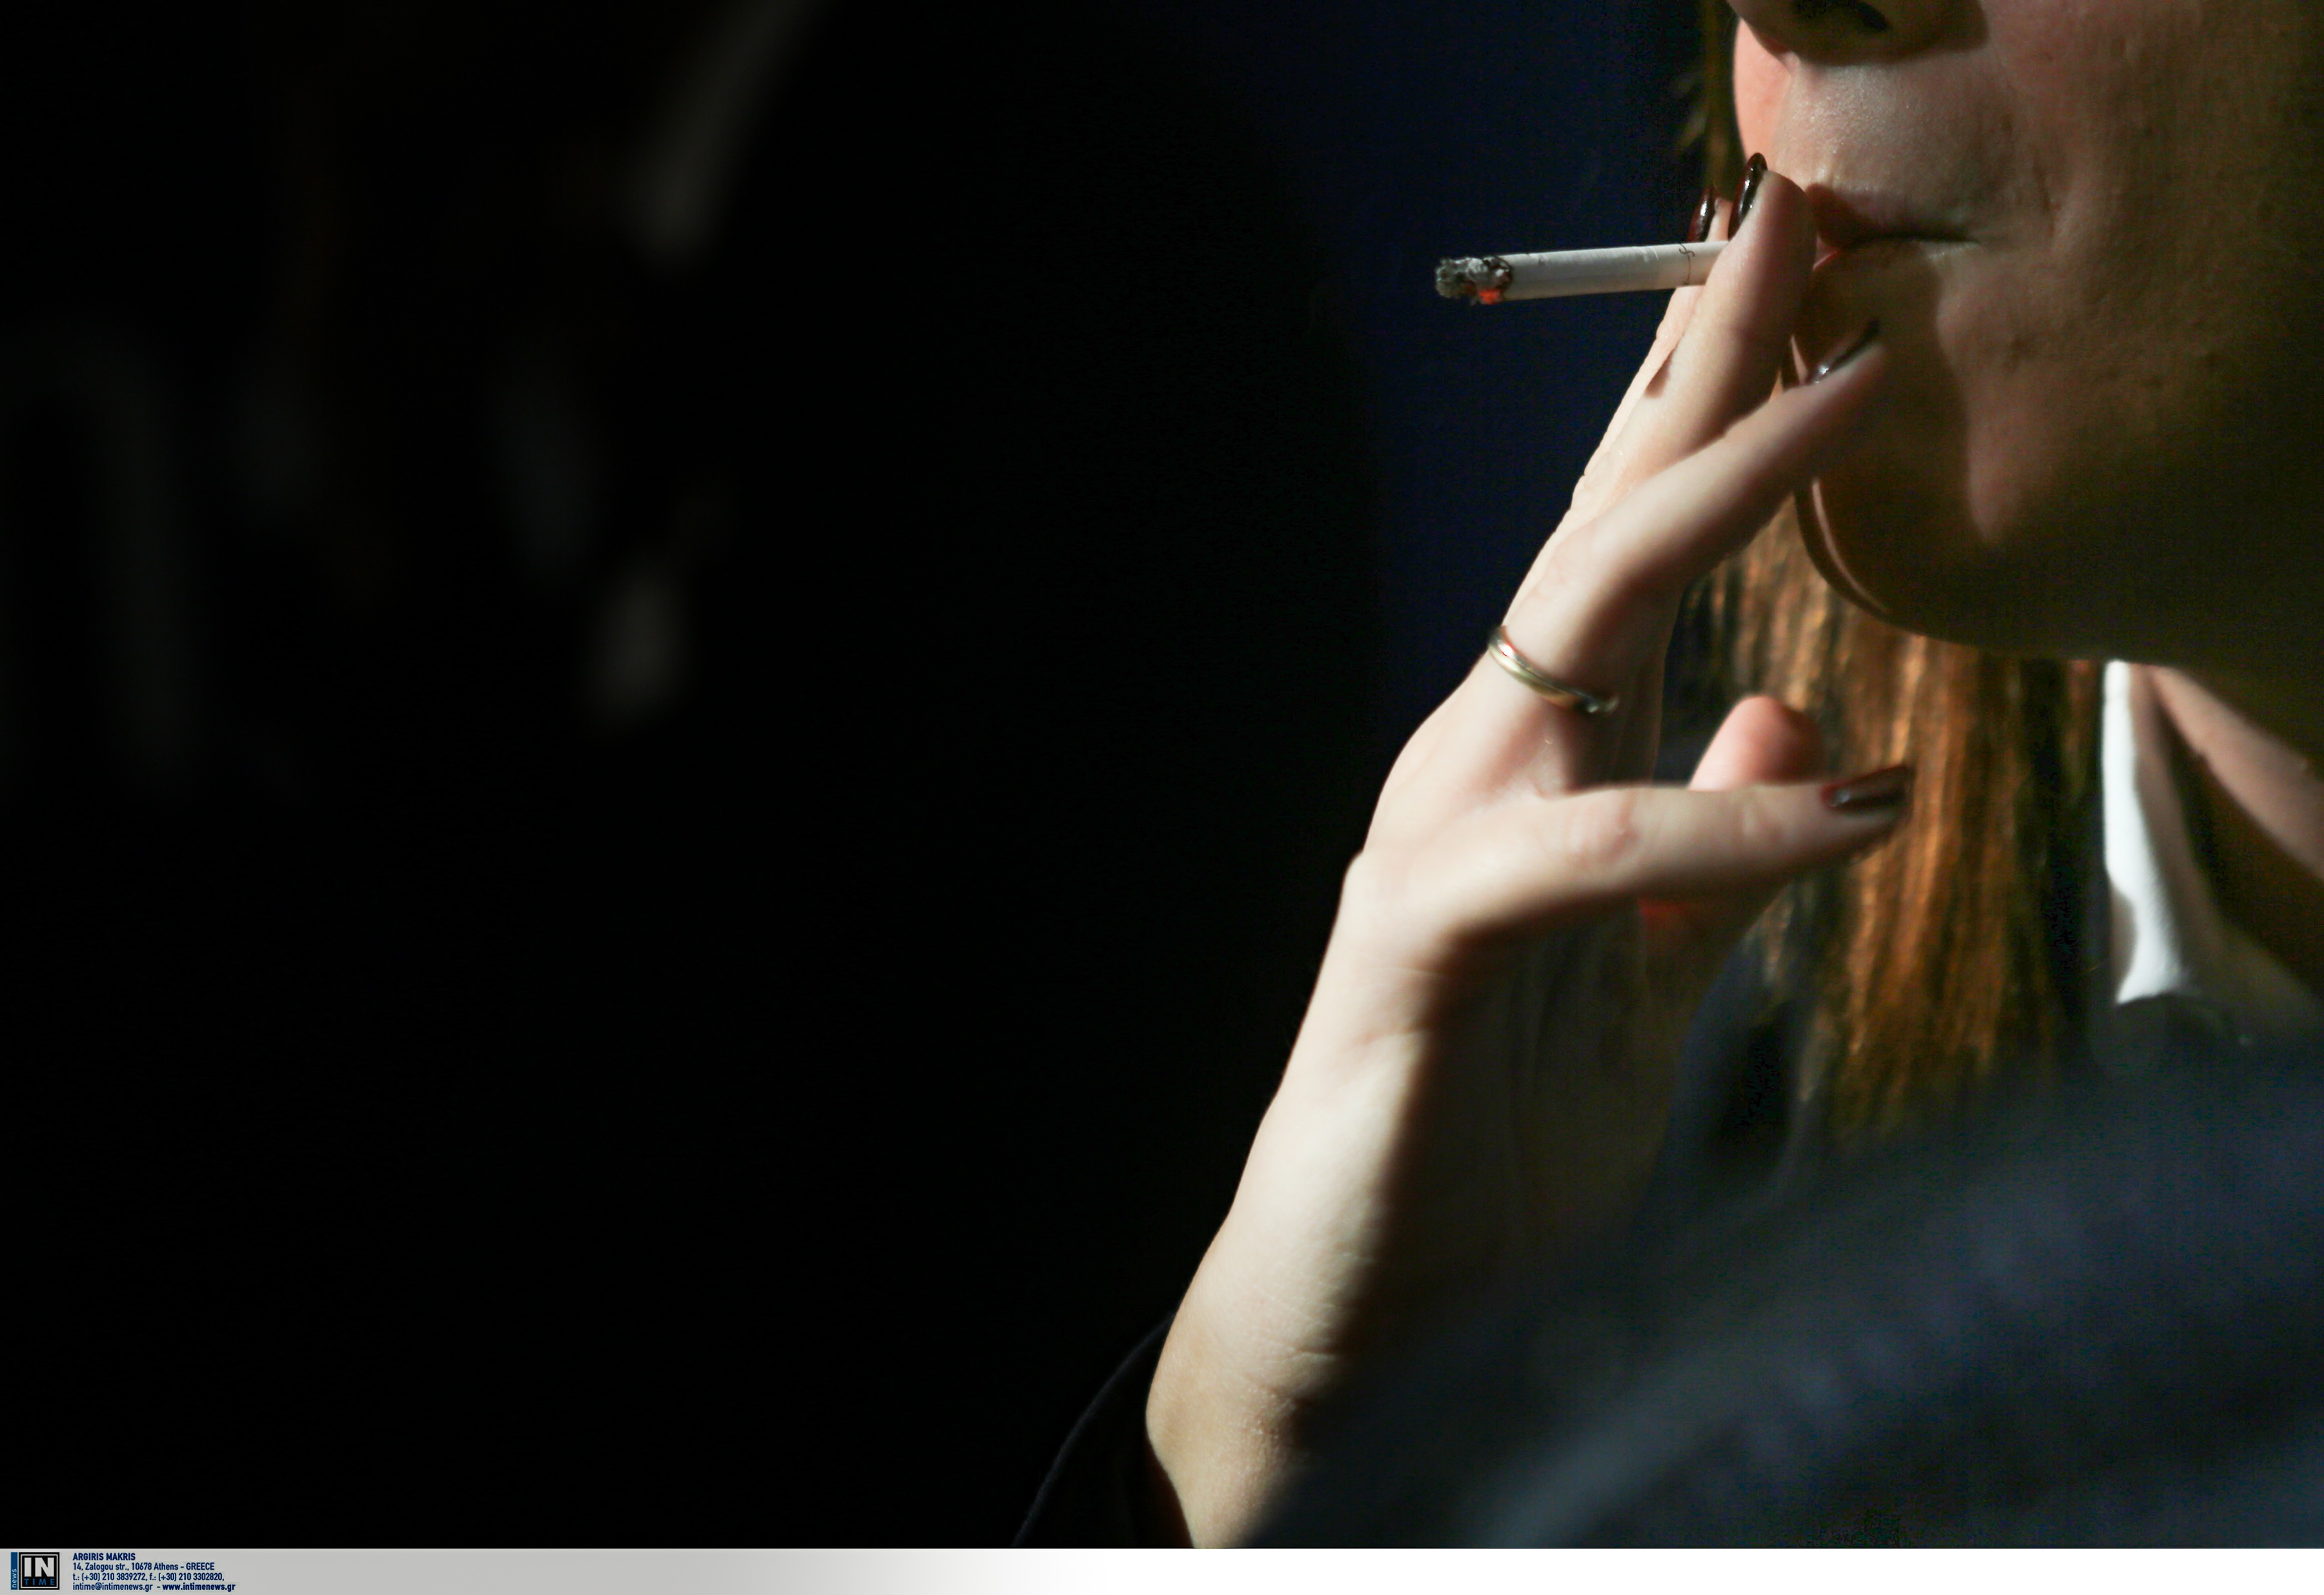 Αντικαπνιστικός νόμος: “Άκαπνο” το 76% των καταστημάτων δείχνουν οι τελευταίοι έλεγχοι